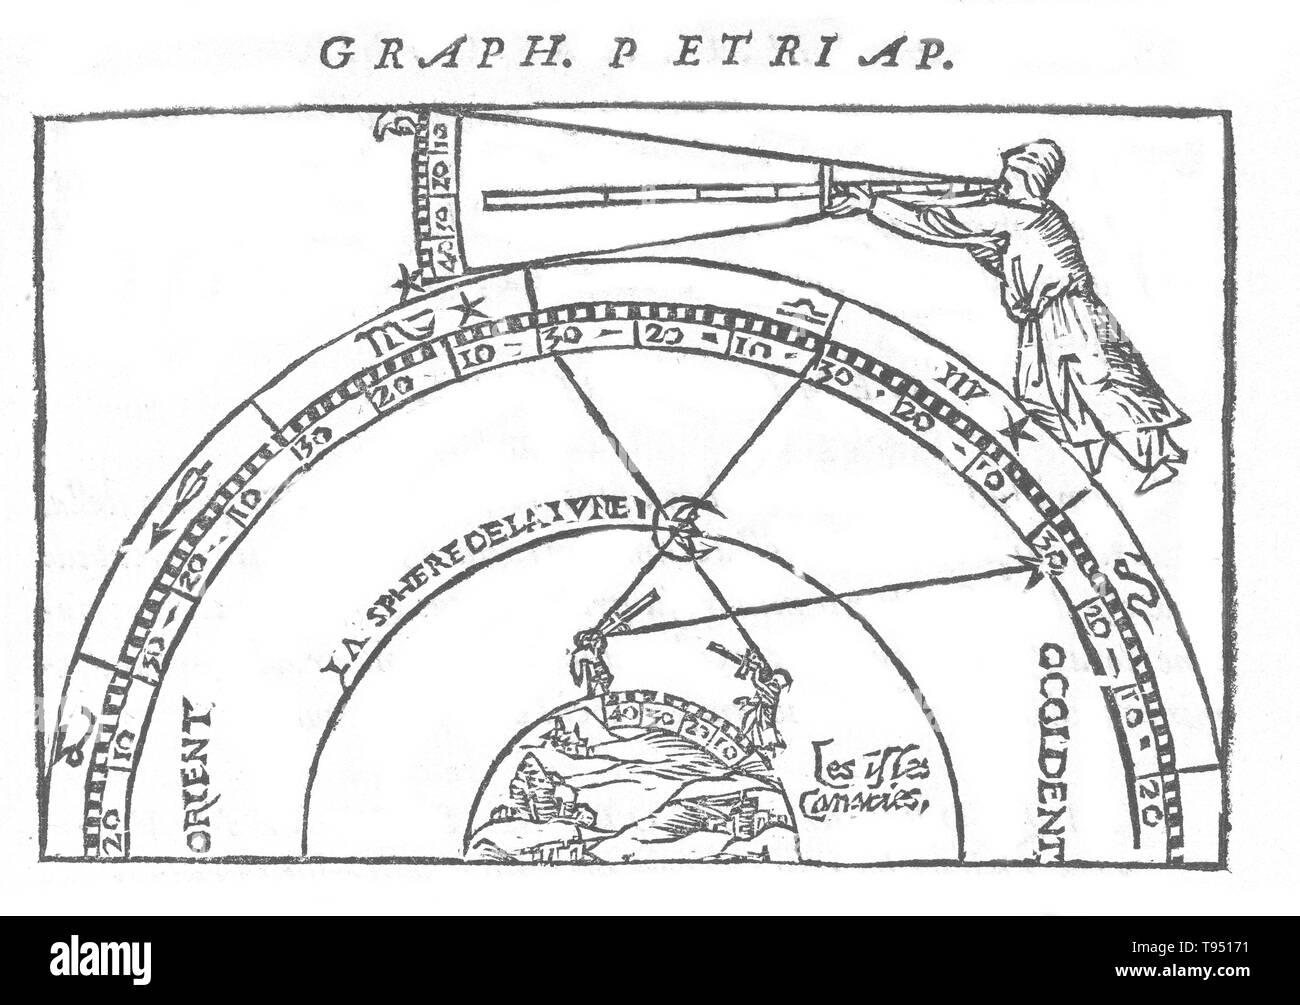 L'immagine storica, dal 1551, è una dimostrazione di come determinare una posizione longitudinale mediante il Lunar metodo di distanza. Da Cosmographicus liber di Petrus Apiano (1495-1552), noto anche come Peter Apian, un umanista tedesco noto per le sue opere in matematica, astronomia e cartografia. Foto Stock